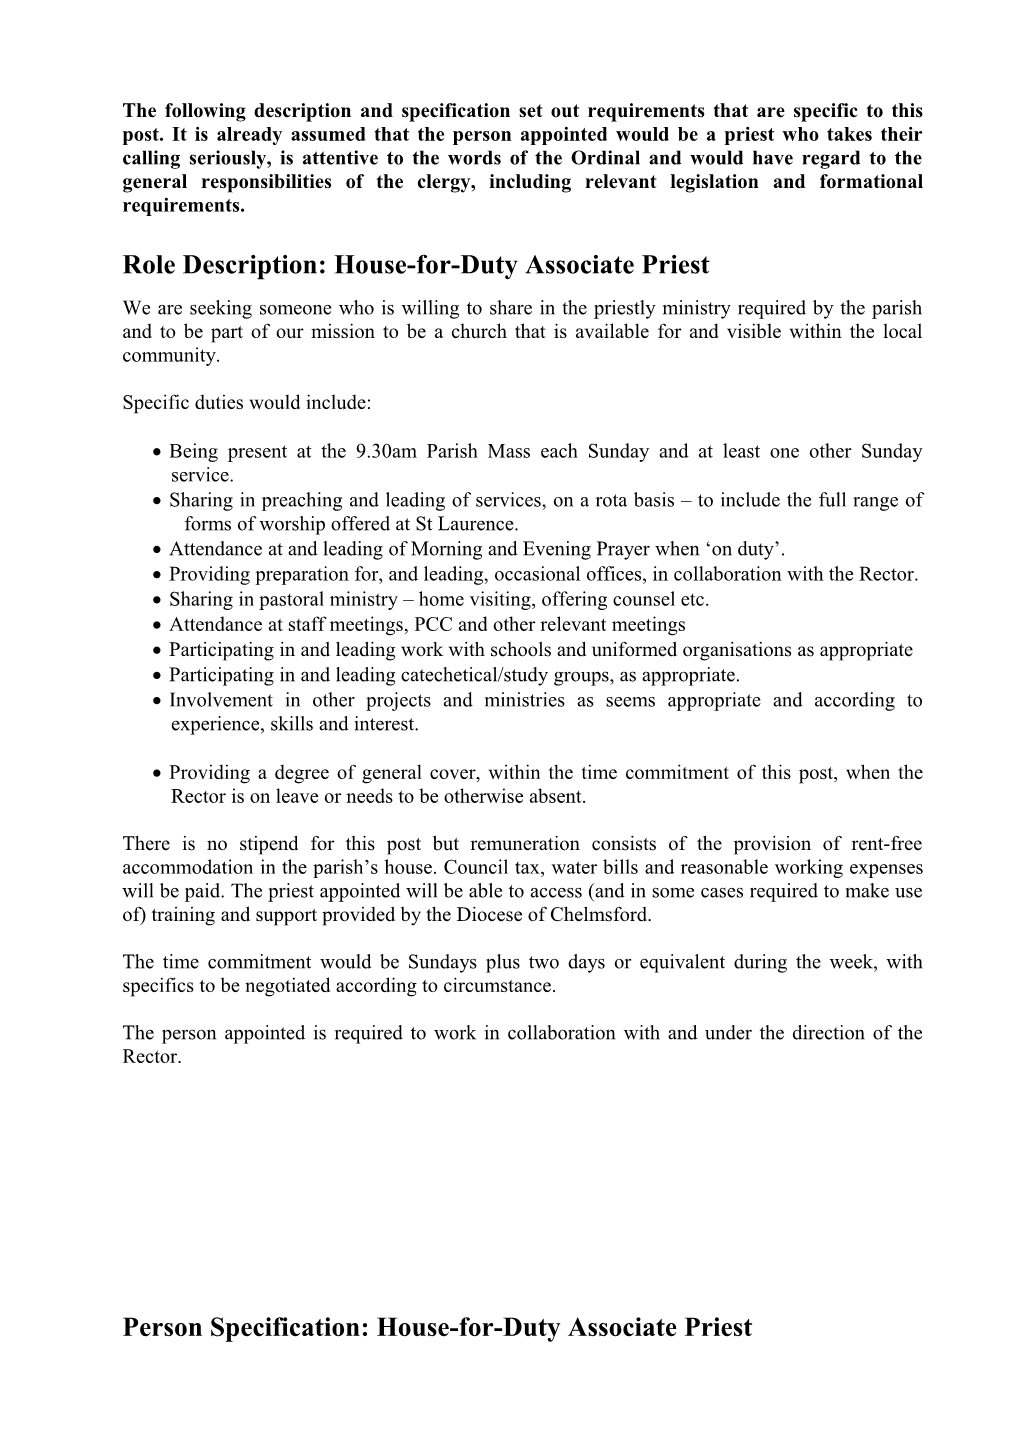 Role Description: House-For-Duty Associate Priest